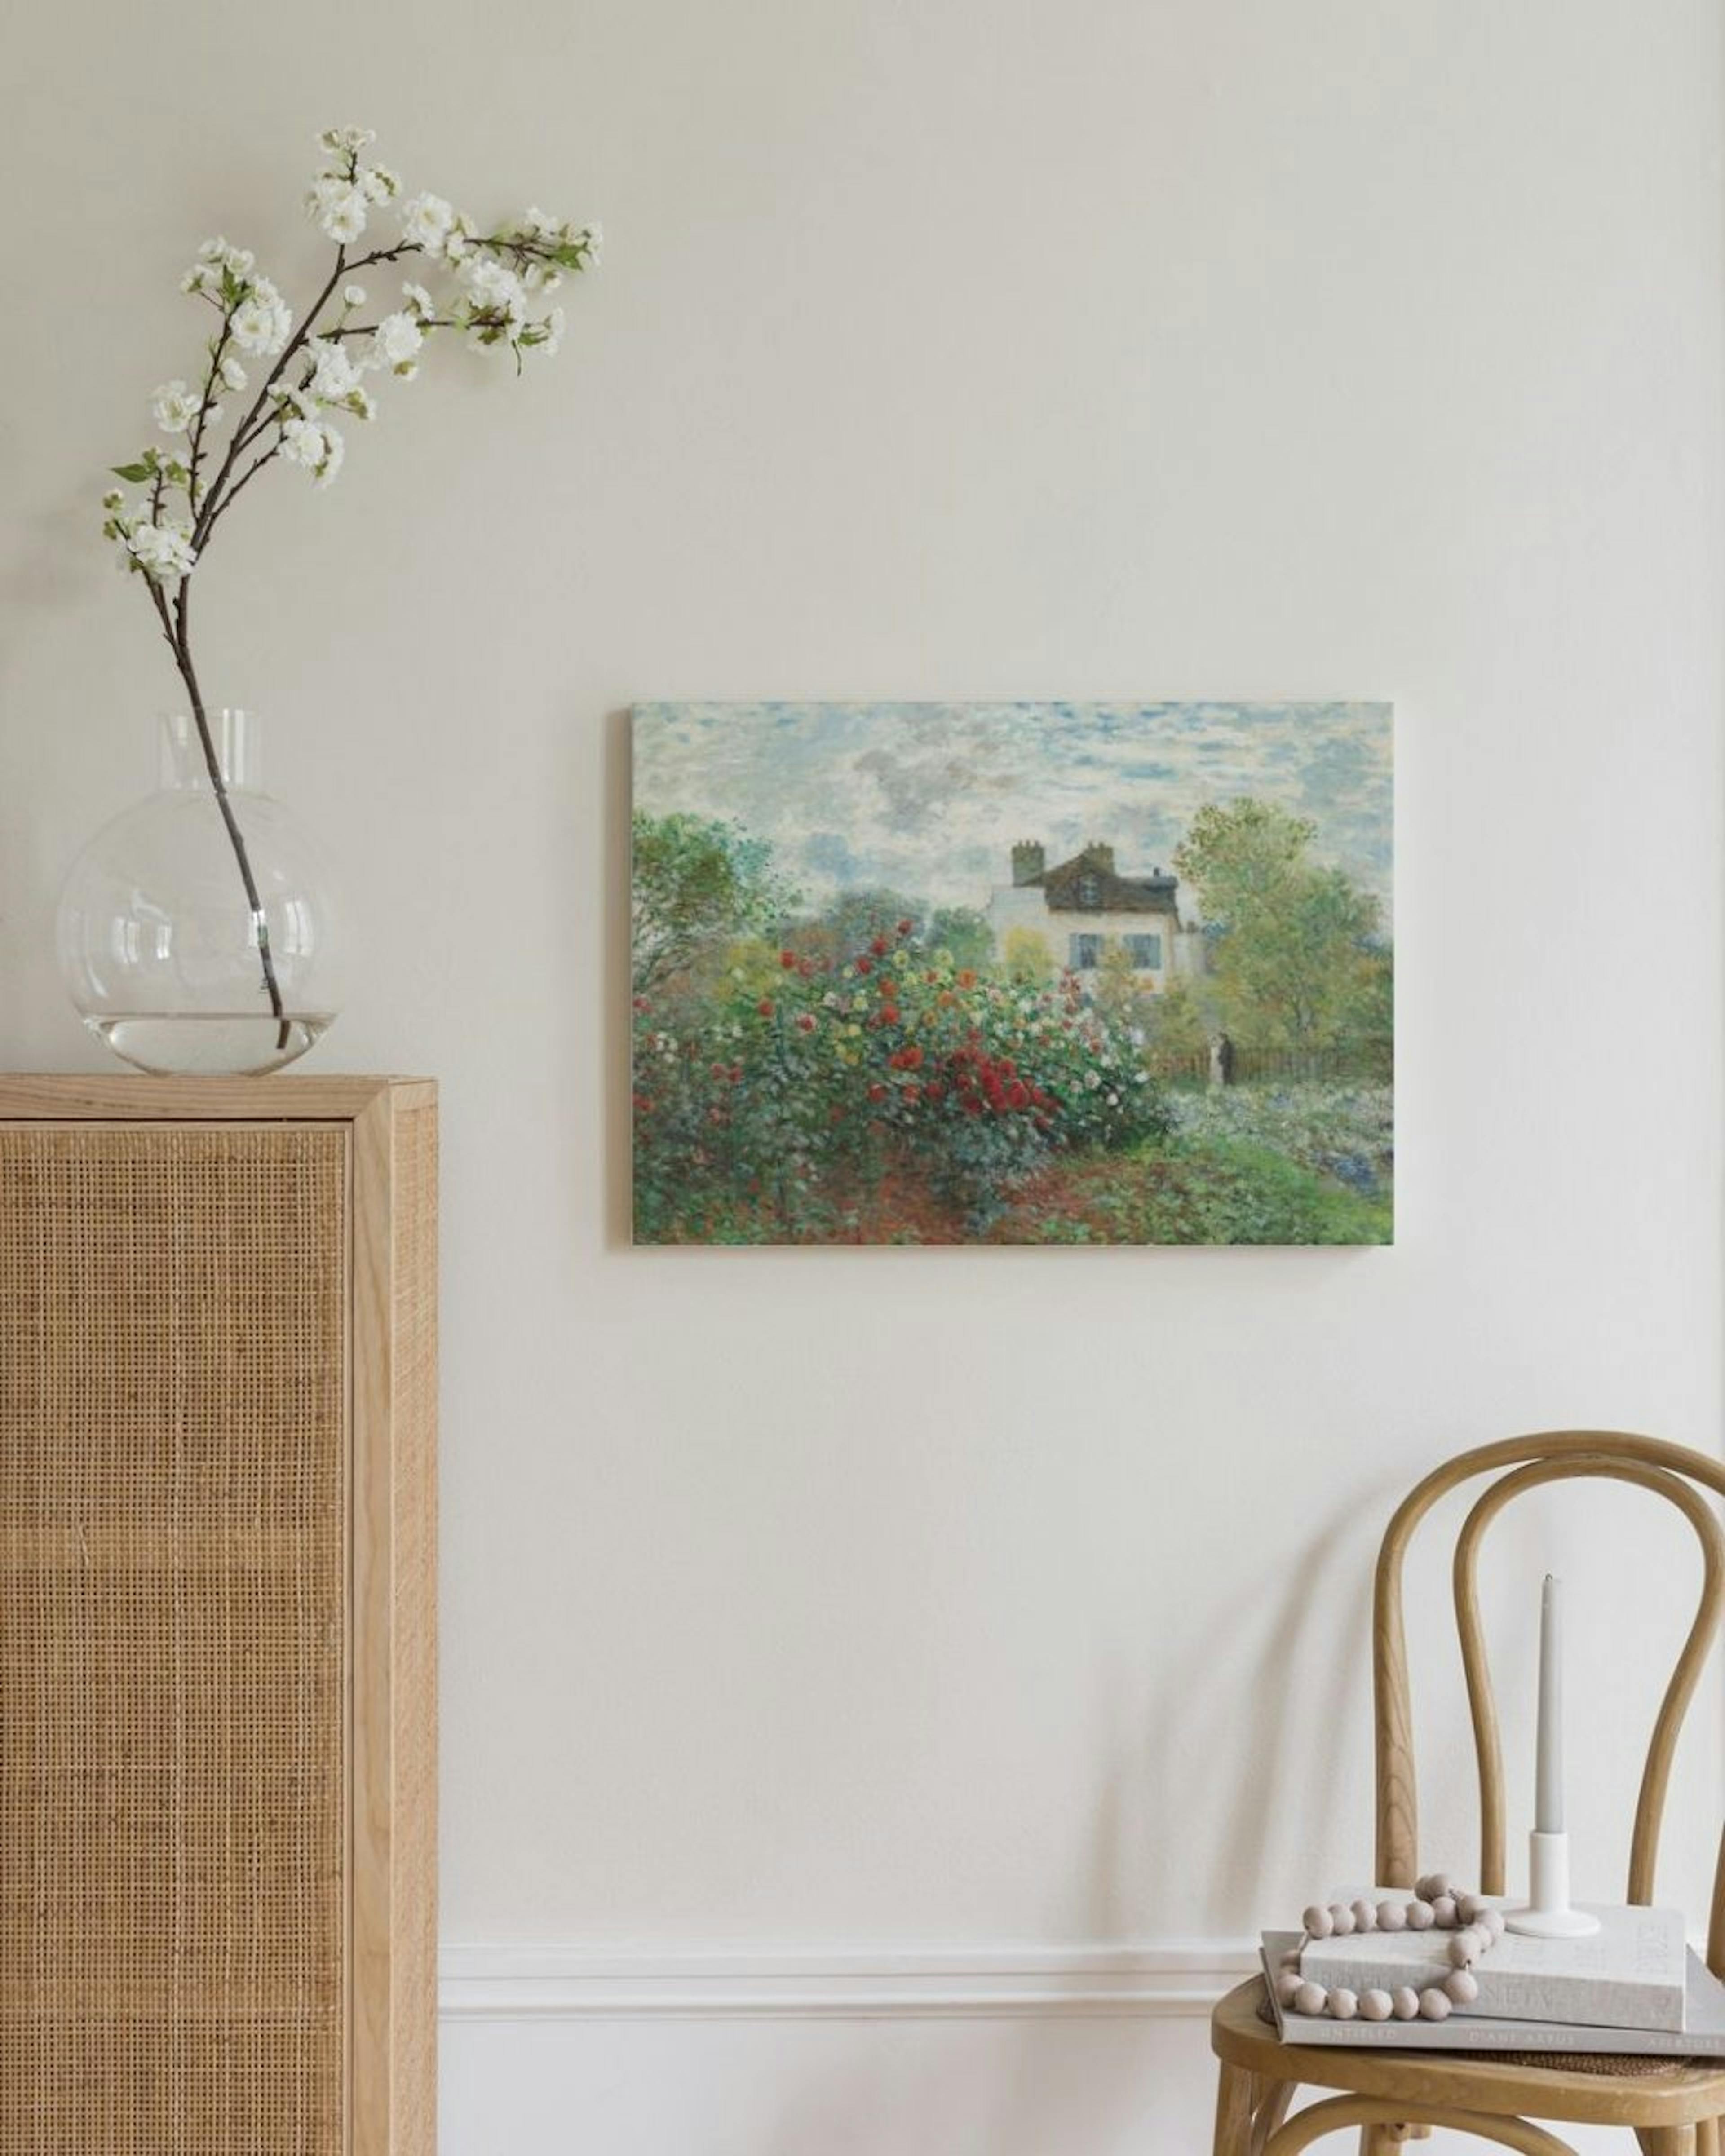 Monet - A Corner of the Garden with Dahlias Canvas